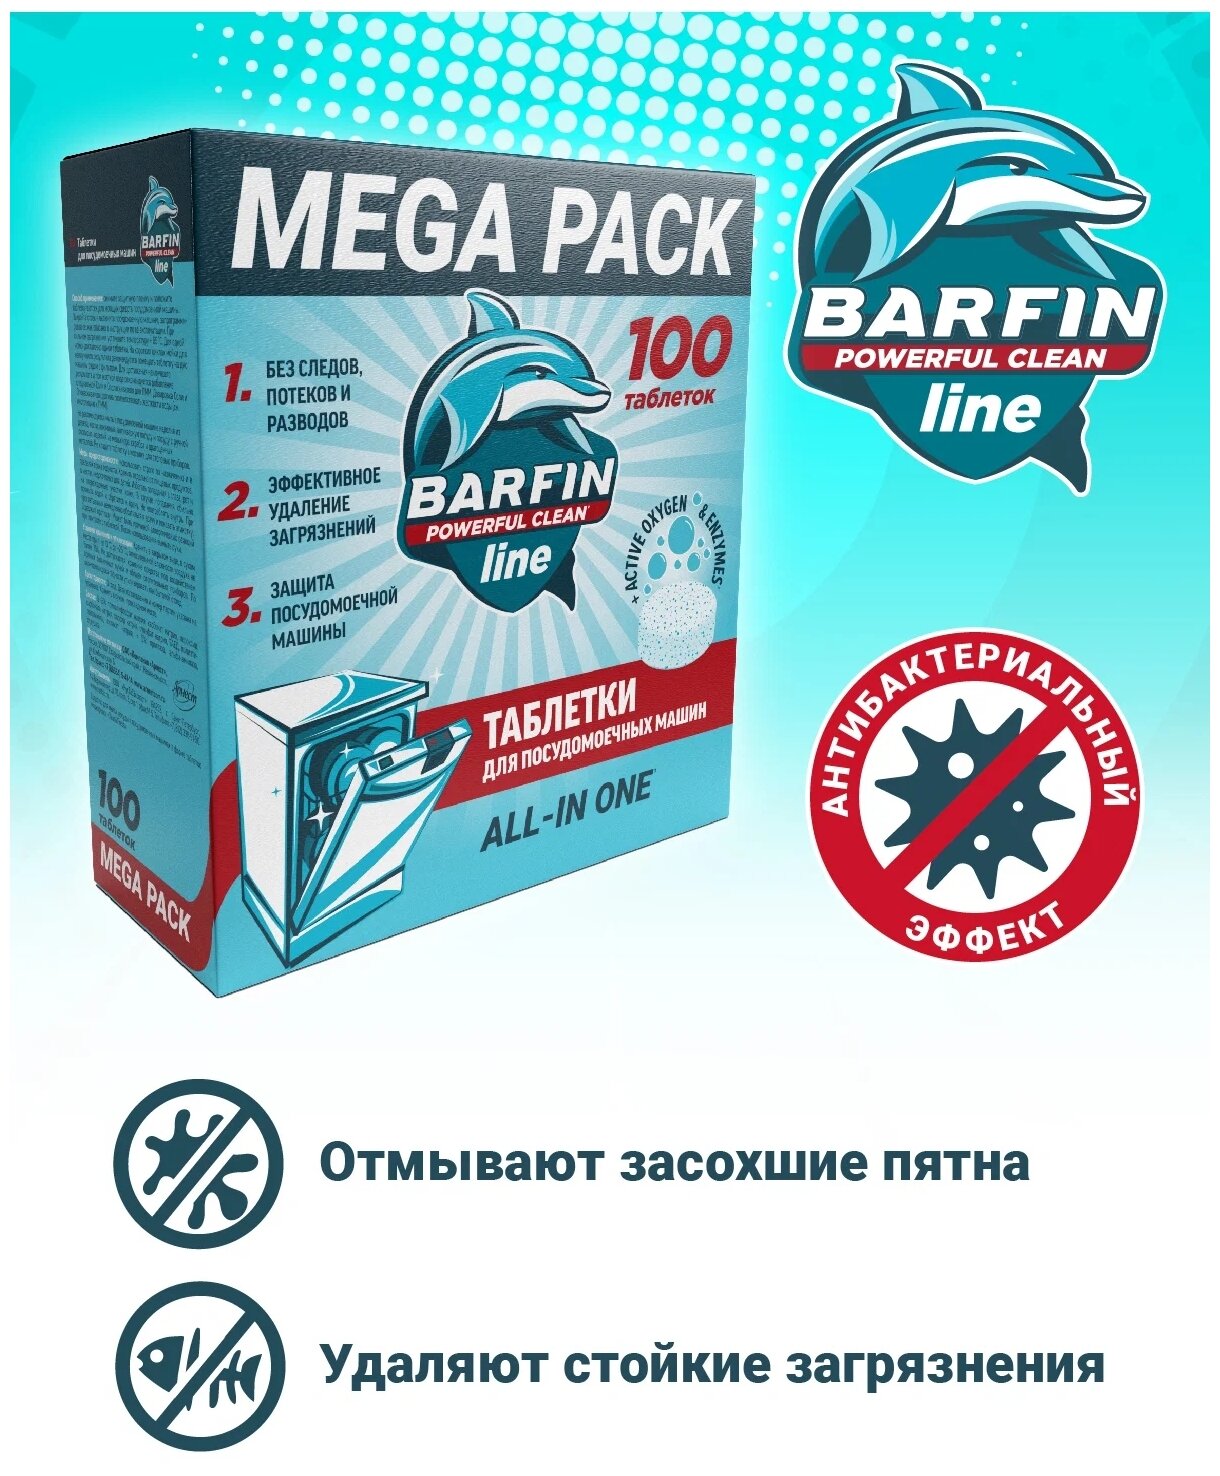 Таблетки для посудомоечной машины Barfin с антибактериальным эффектом 100 